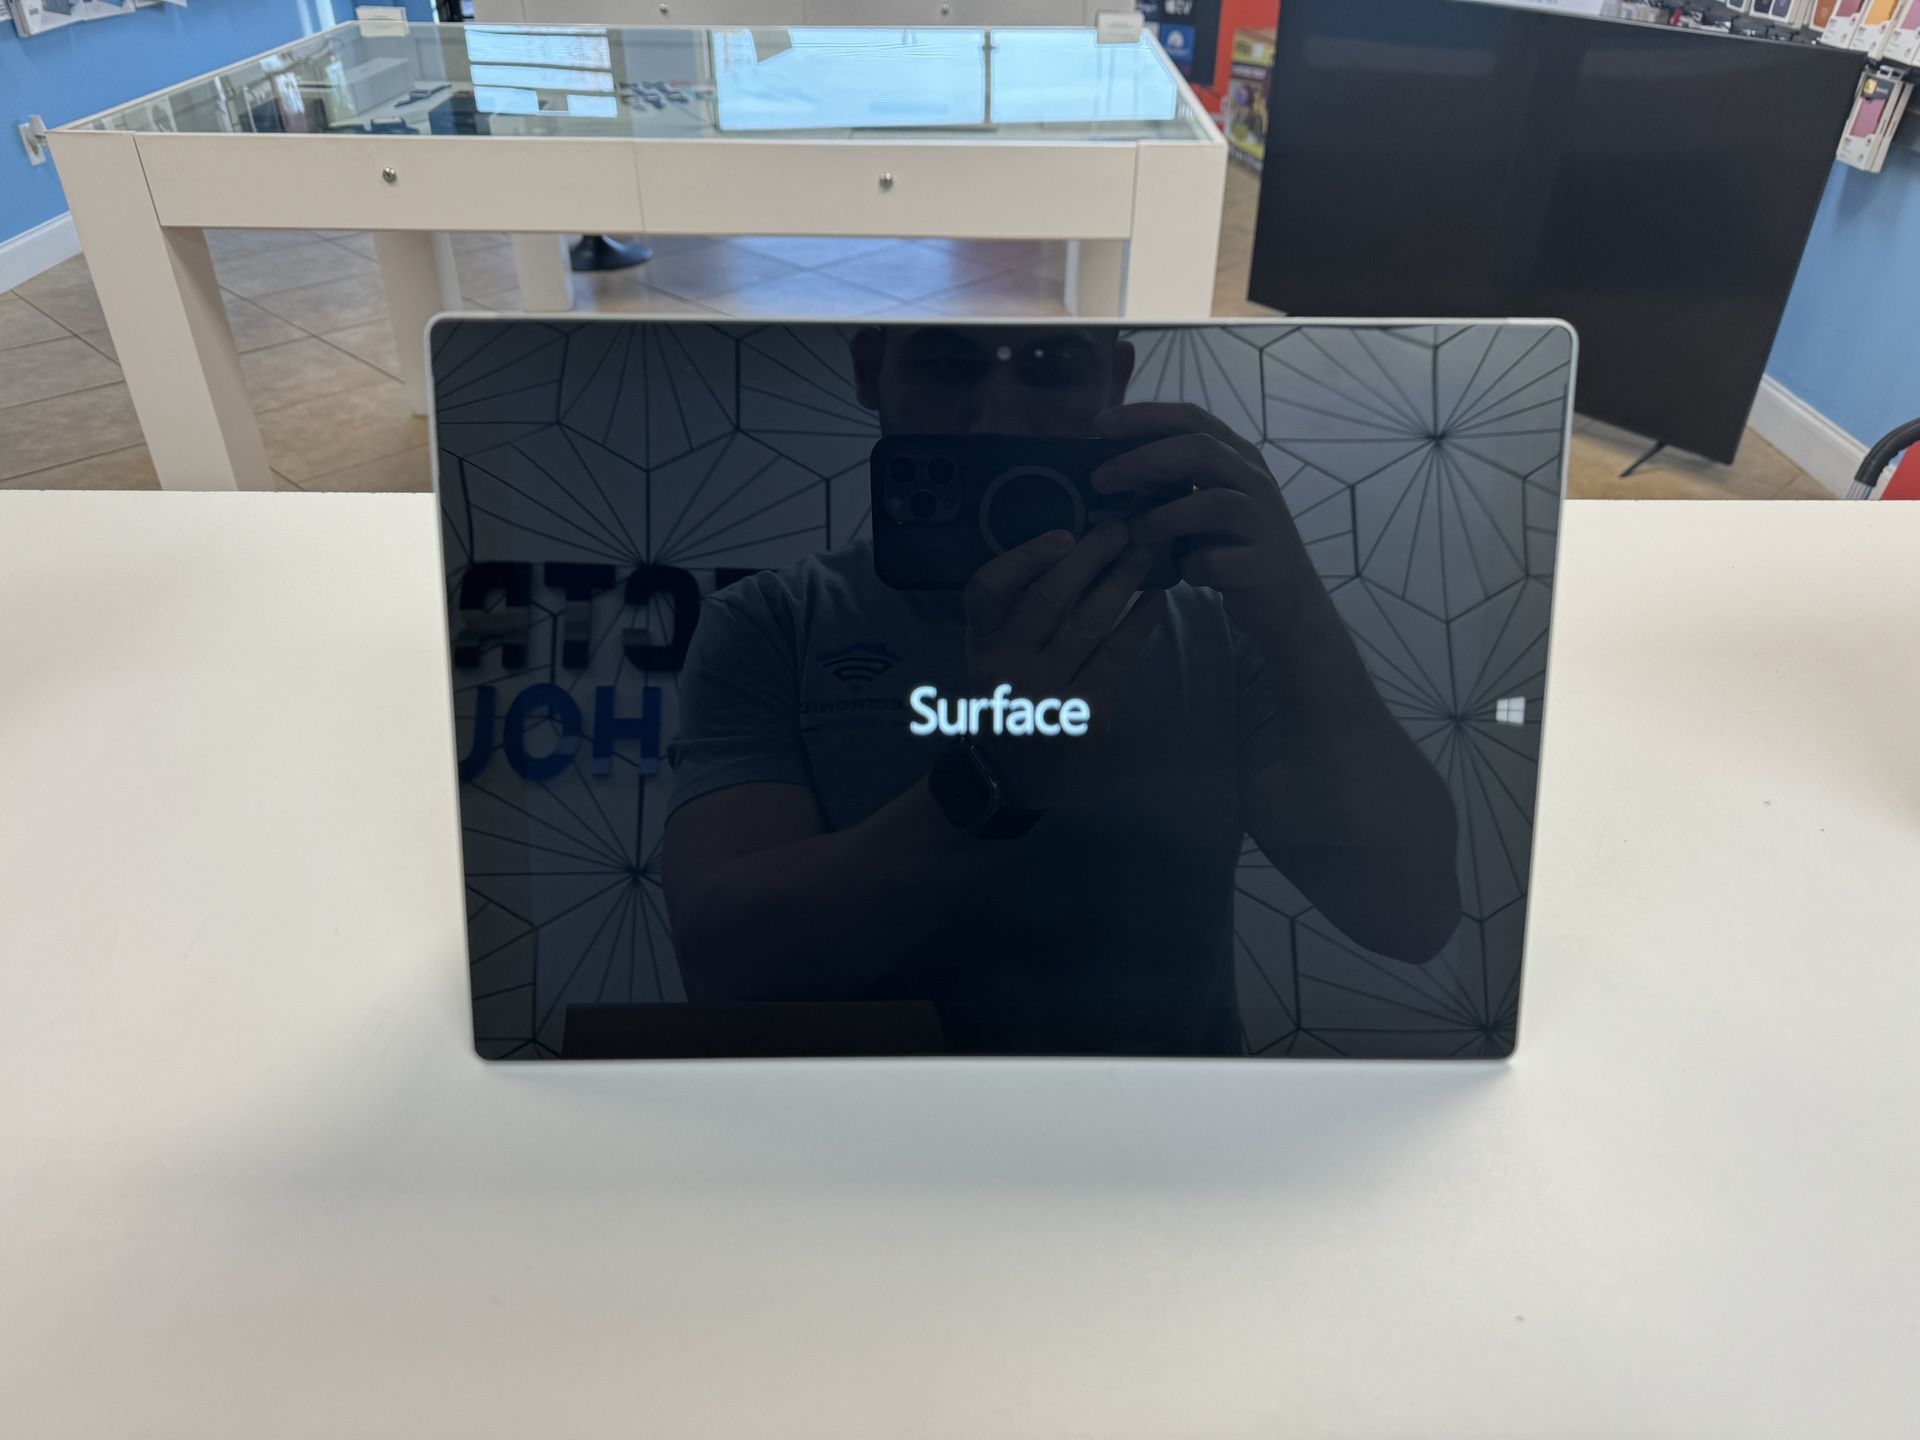 Microsoft Surface Pro 3 Wi-Fi, 12in - Silver I5 Processor 256 GB 